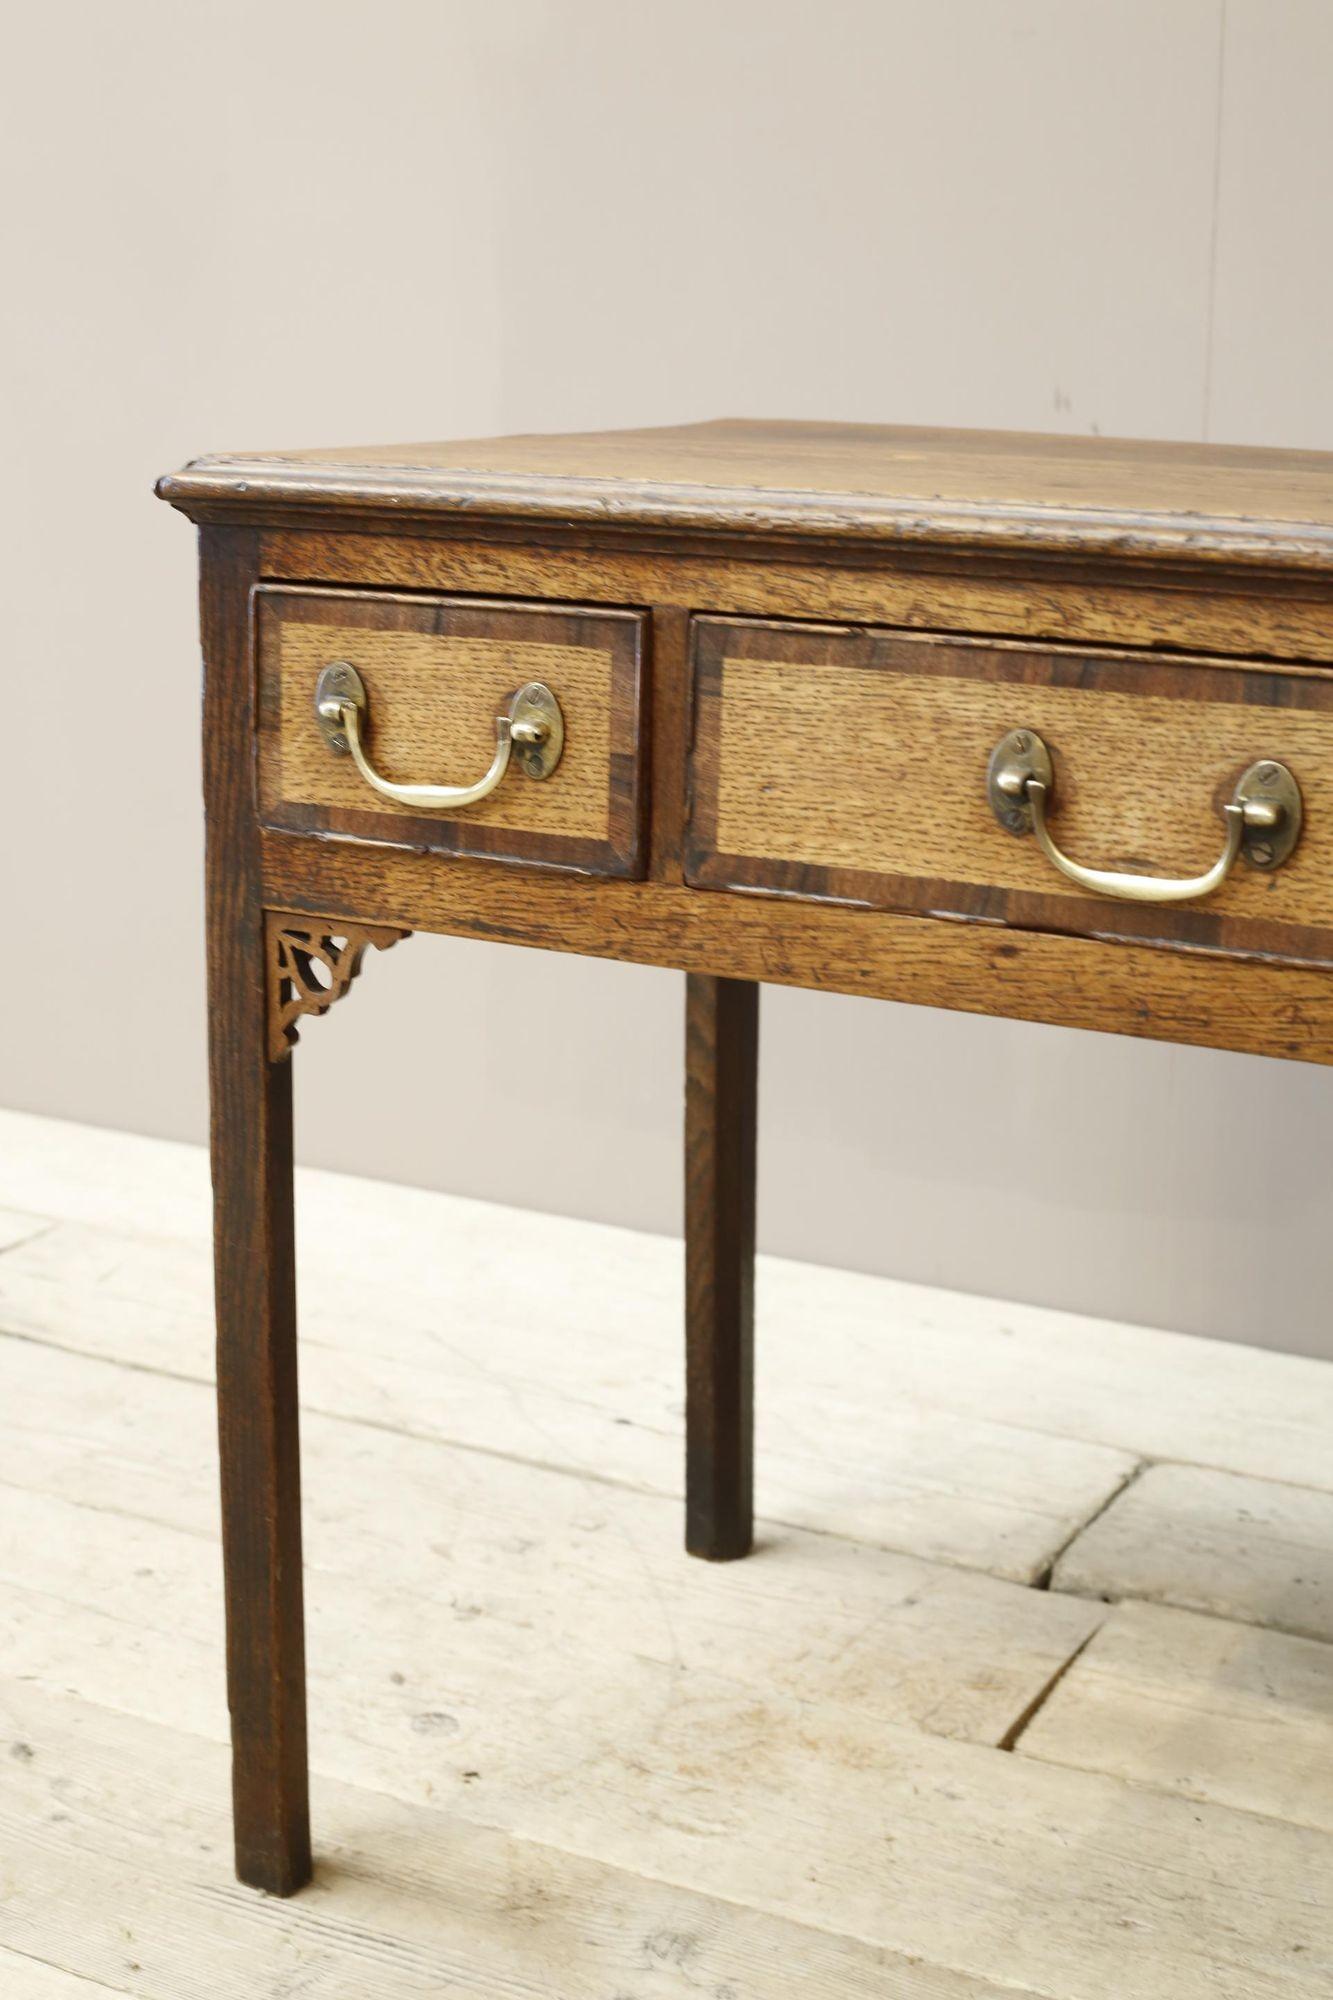 Il s'agit d'un très beau meuble géorgien du XVIIIe siècle. Fabriqué en chêne avec de jolis détails en bandes croisées autour de chaque tiroir. Solide état donc parfaitement utilisable et plein de caractère. Les tiroirs s'ouvrent et se ferment